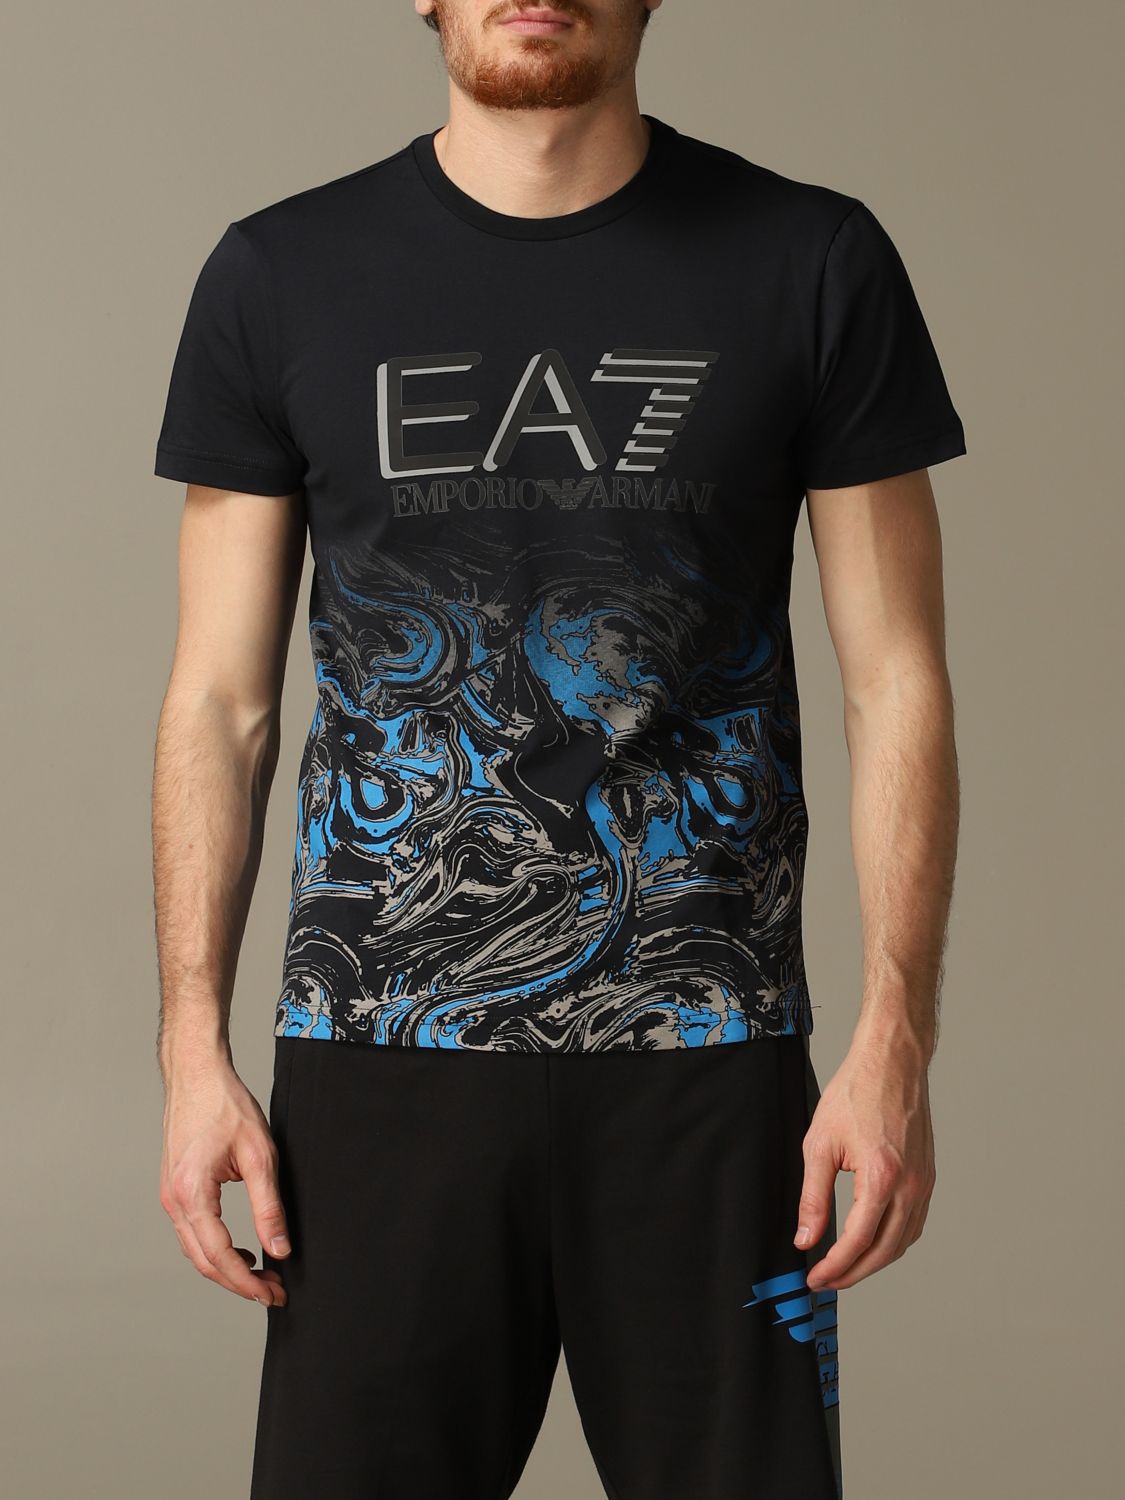 ea7 blue t shirt